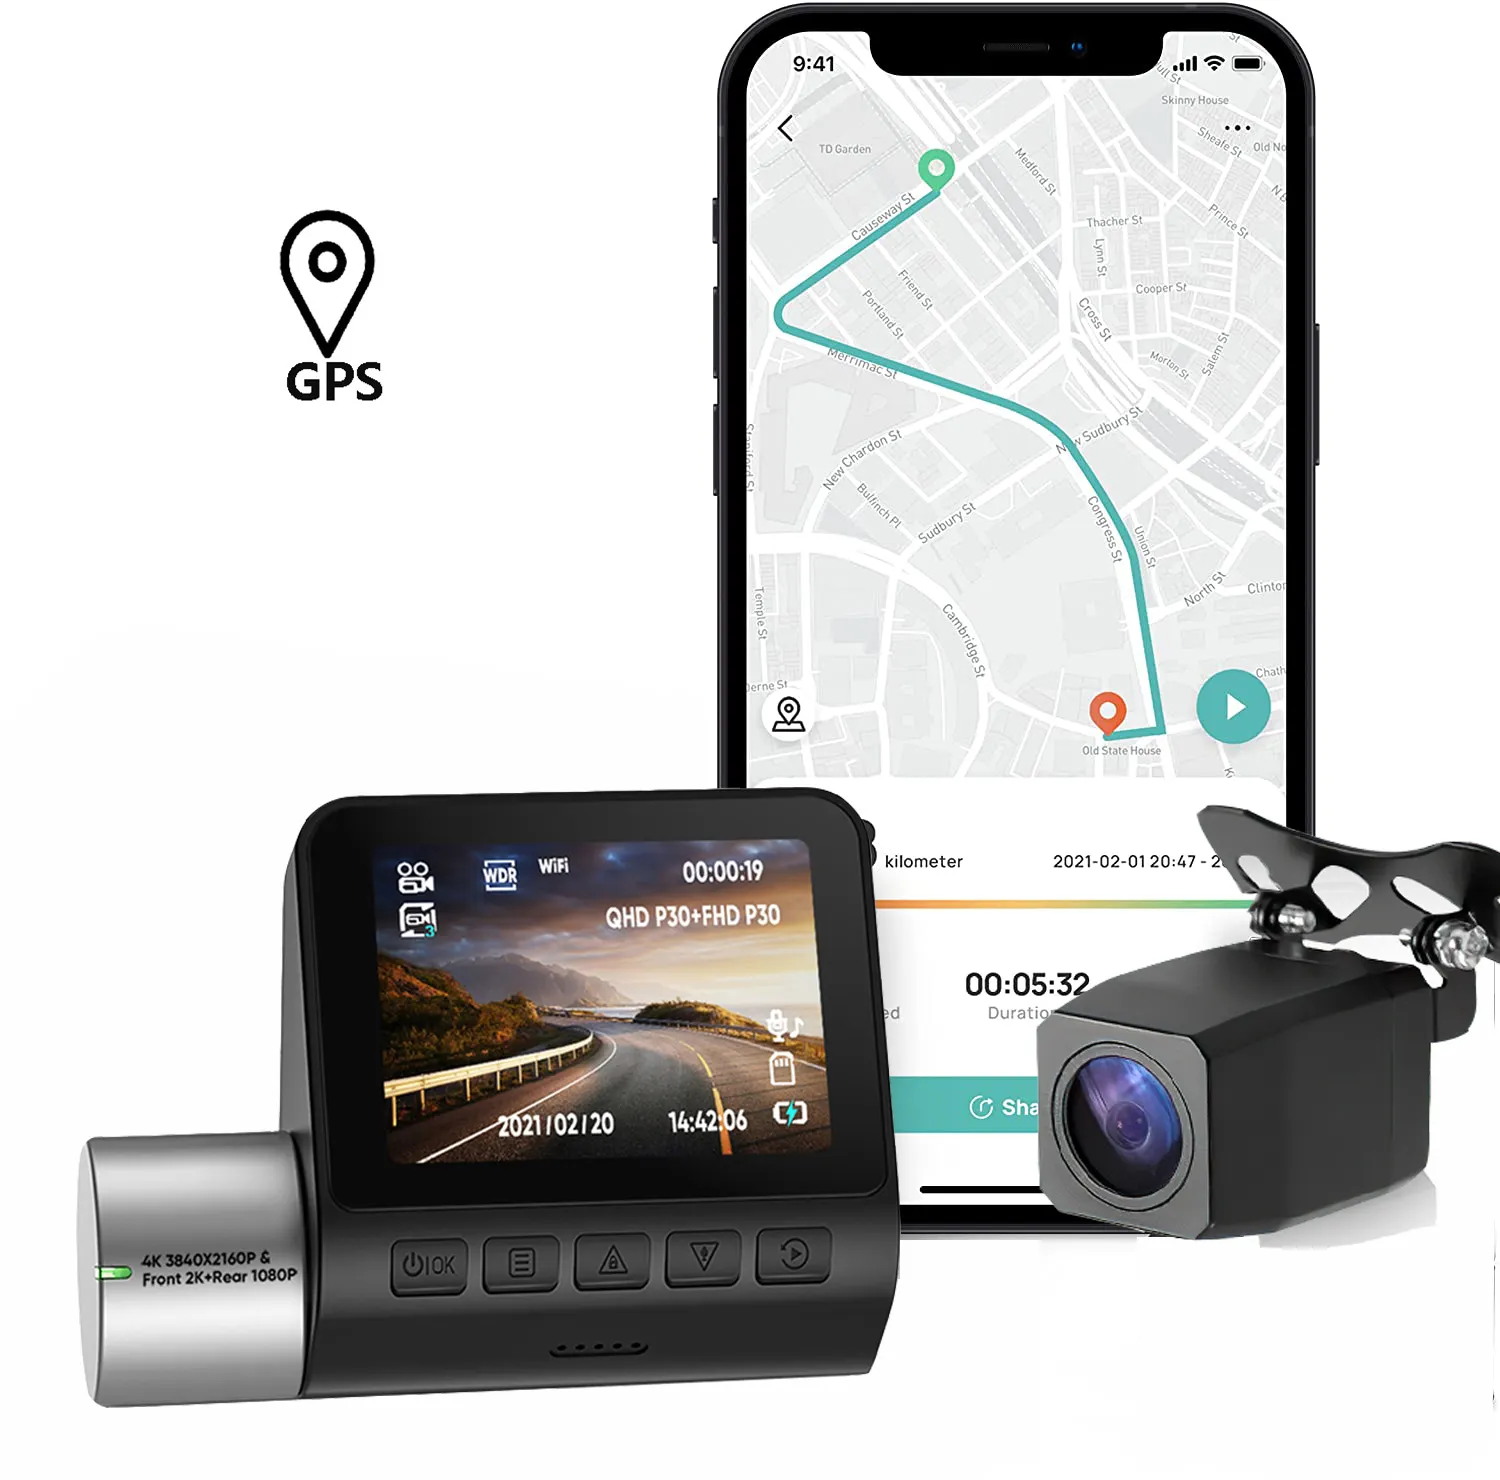 2022 أحدث 2 بوصة dashcam عكس كاميرات واسعة زاوية 2 عدسة الرادار الكاشف مع جهاز تسجيل فيديو رقمي للسيارات كاميرا wifi gps اندفاعة كام 4k صندوق أسود للسيارة